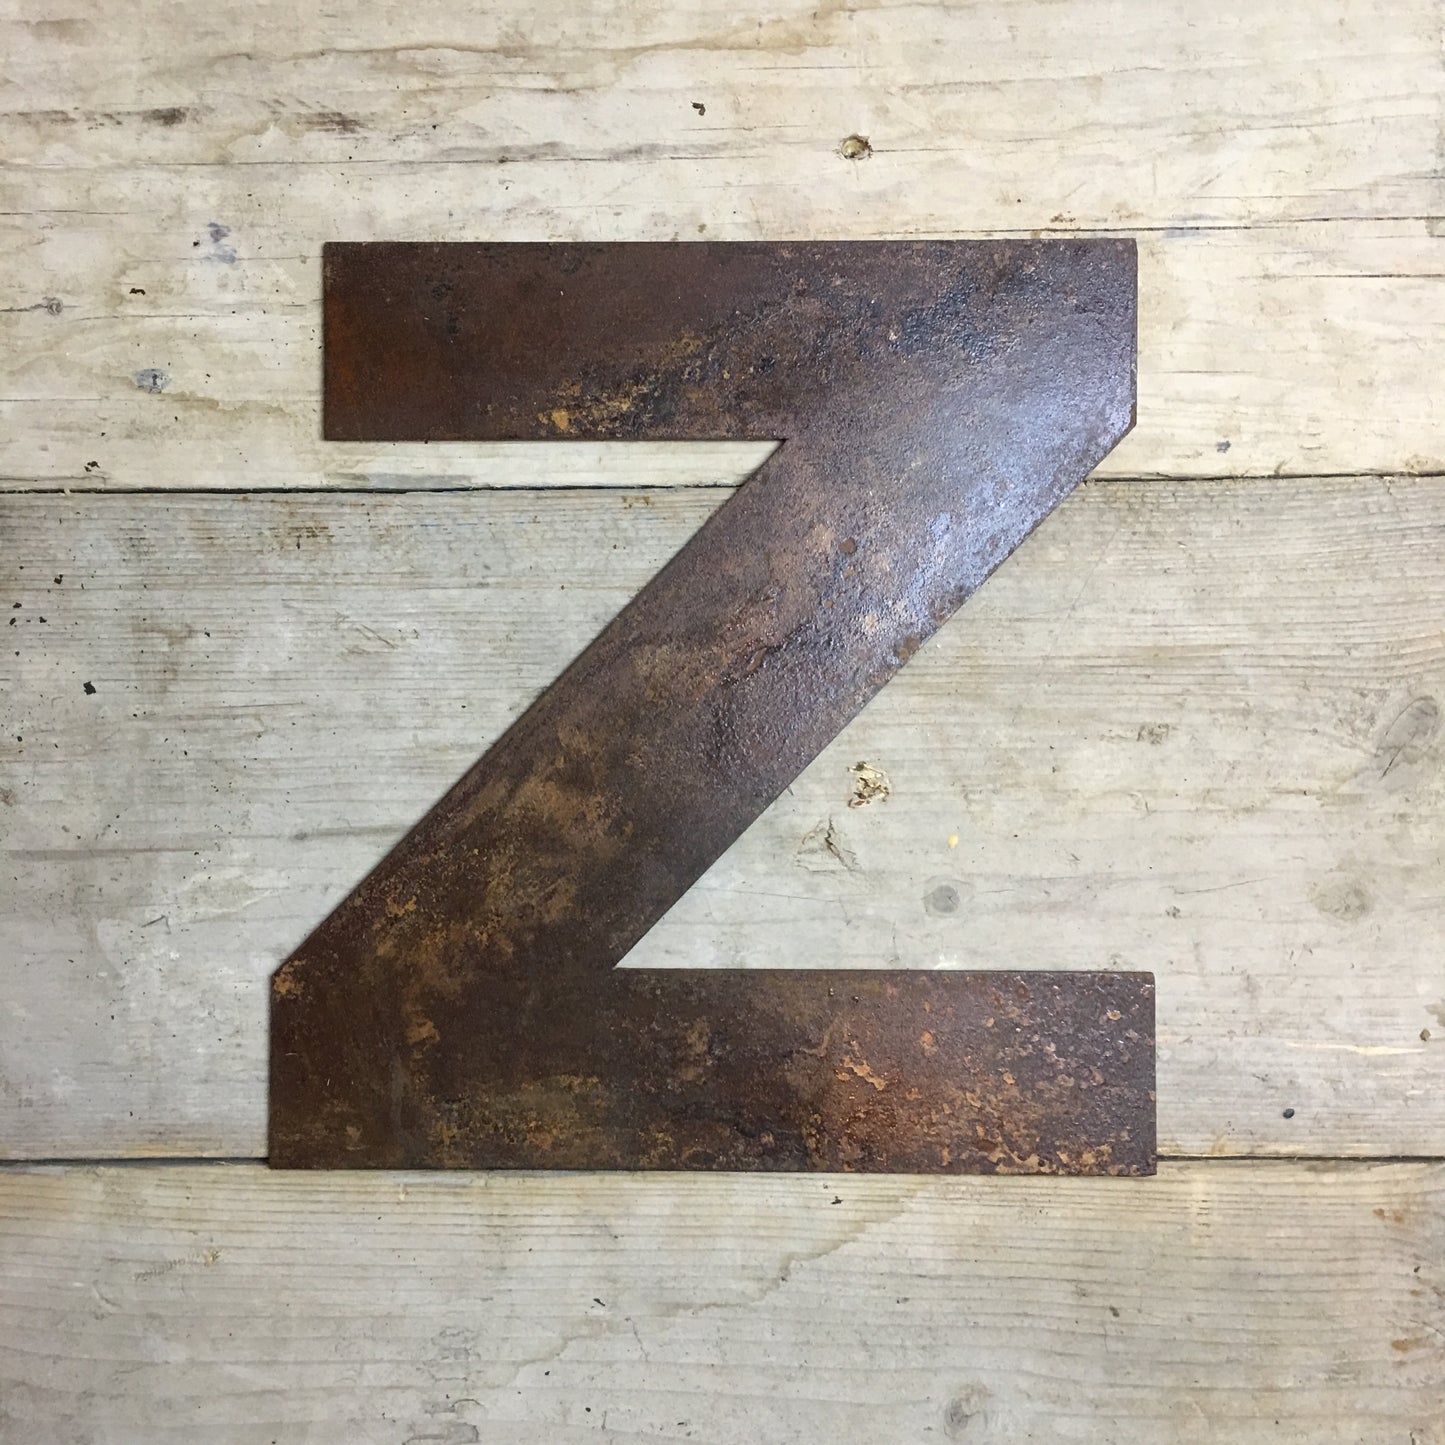 5" Fat Font Rusty Metal Letters A-Z 0-9